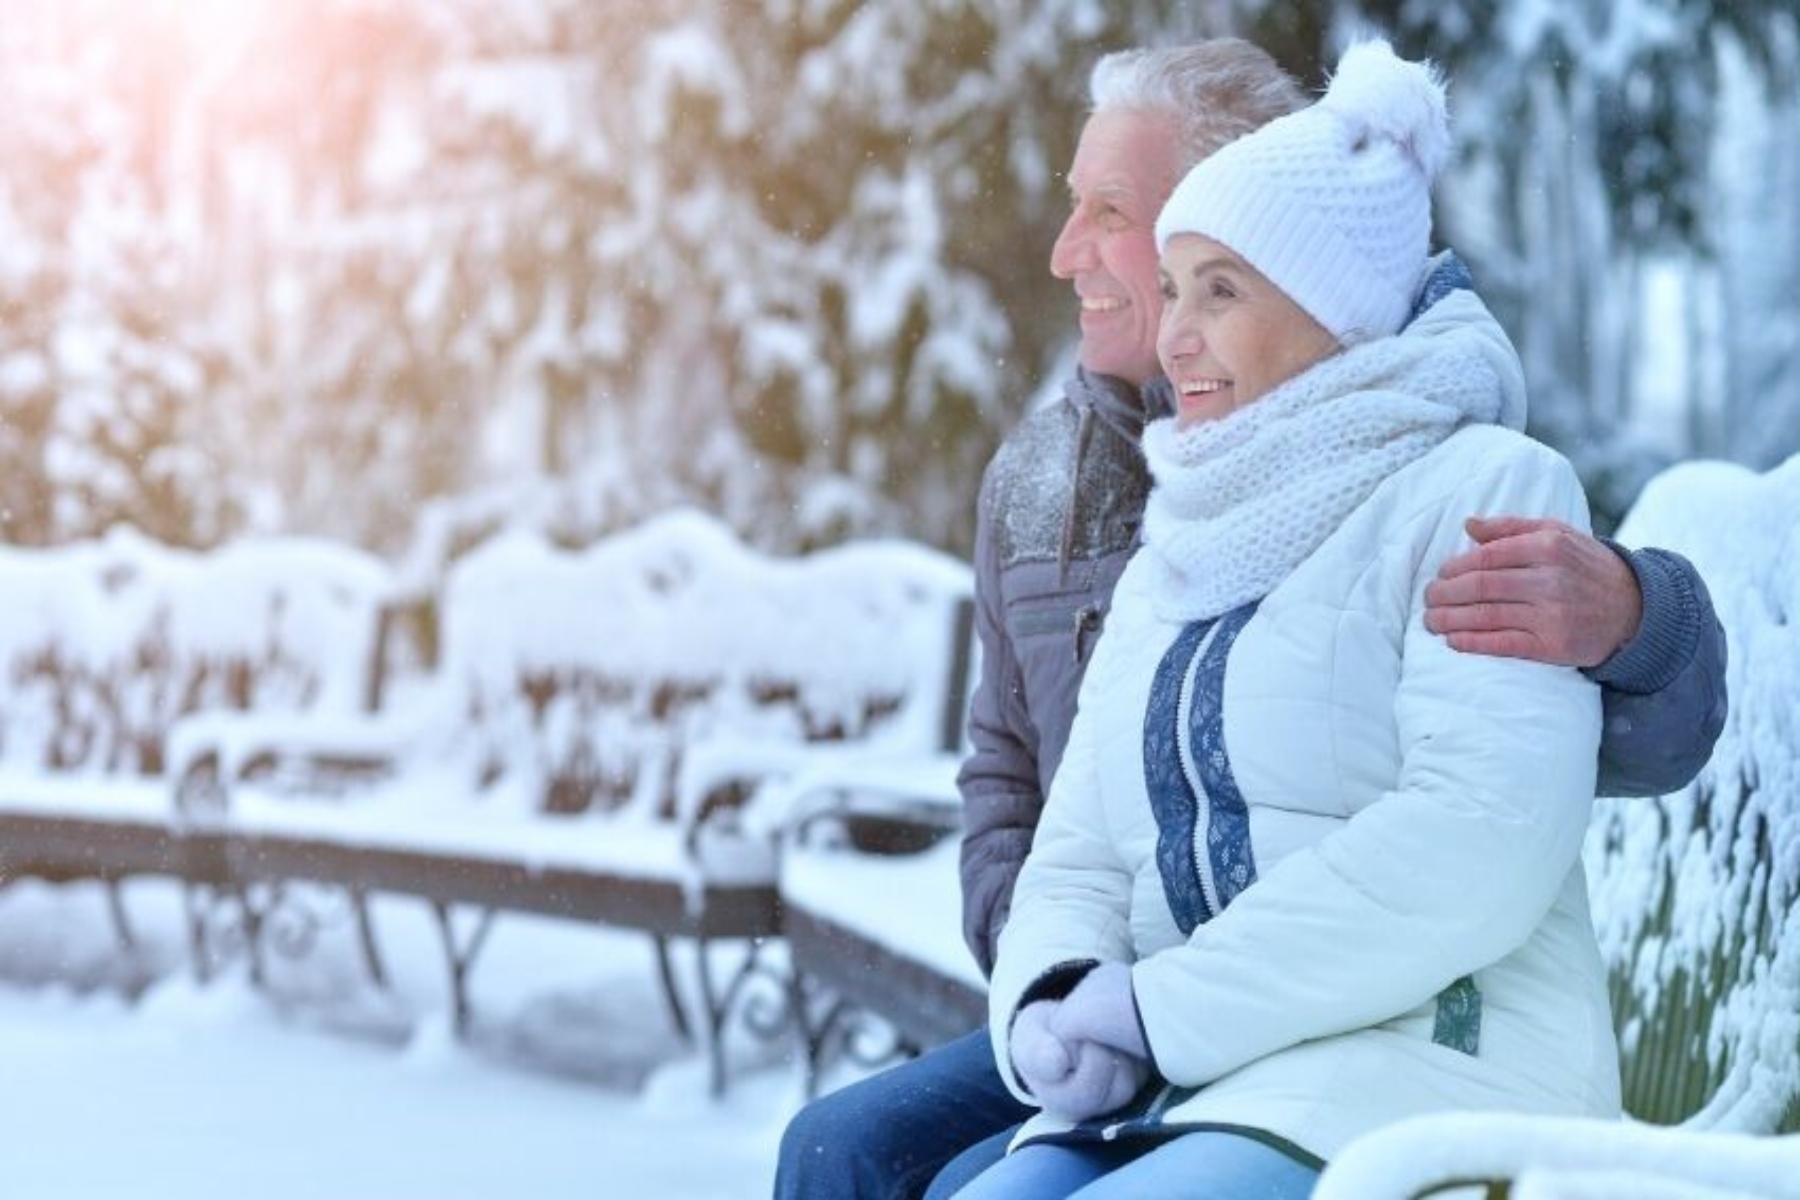 Υγεία: 3 εύκολες συμβουλές για να παραμείνετε υγιείς αυτόν τον χειμώνα